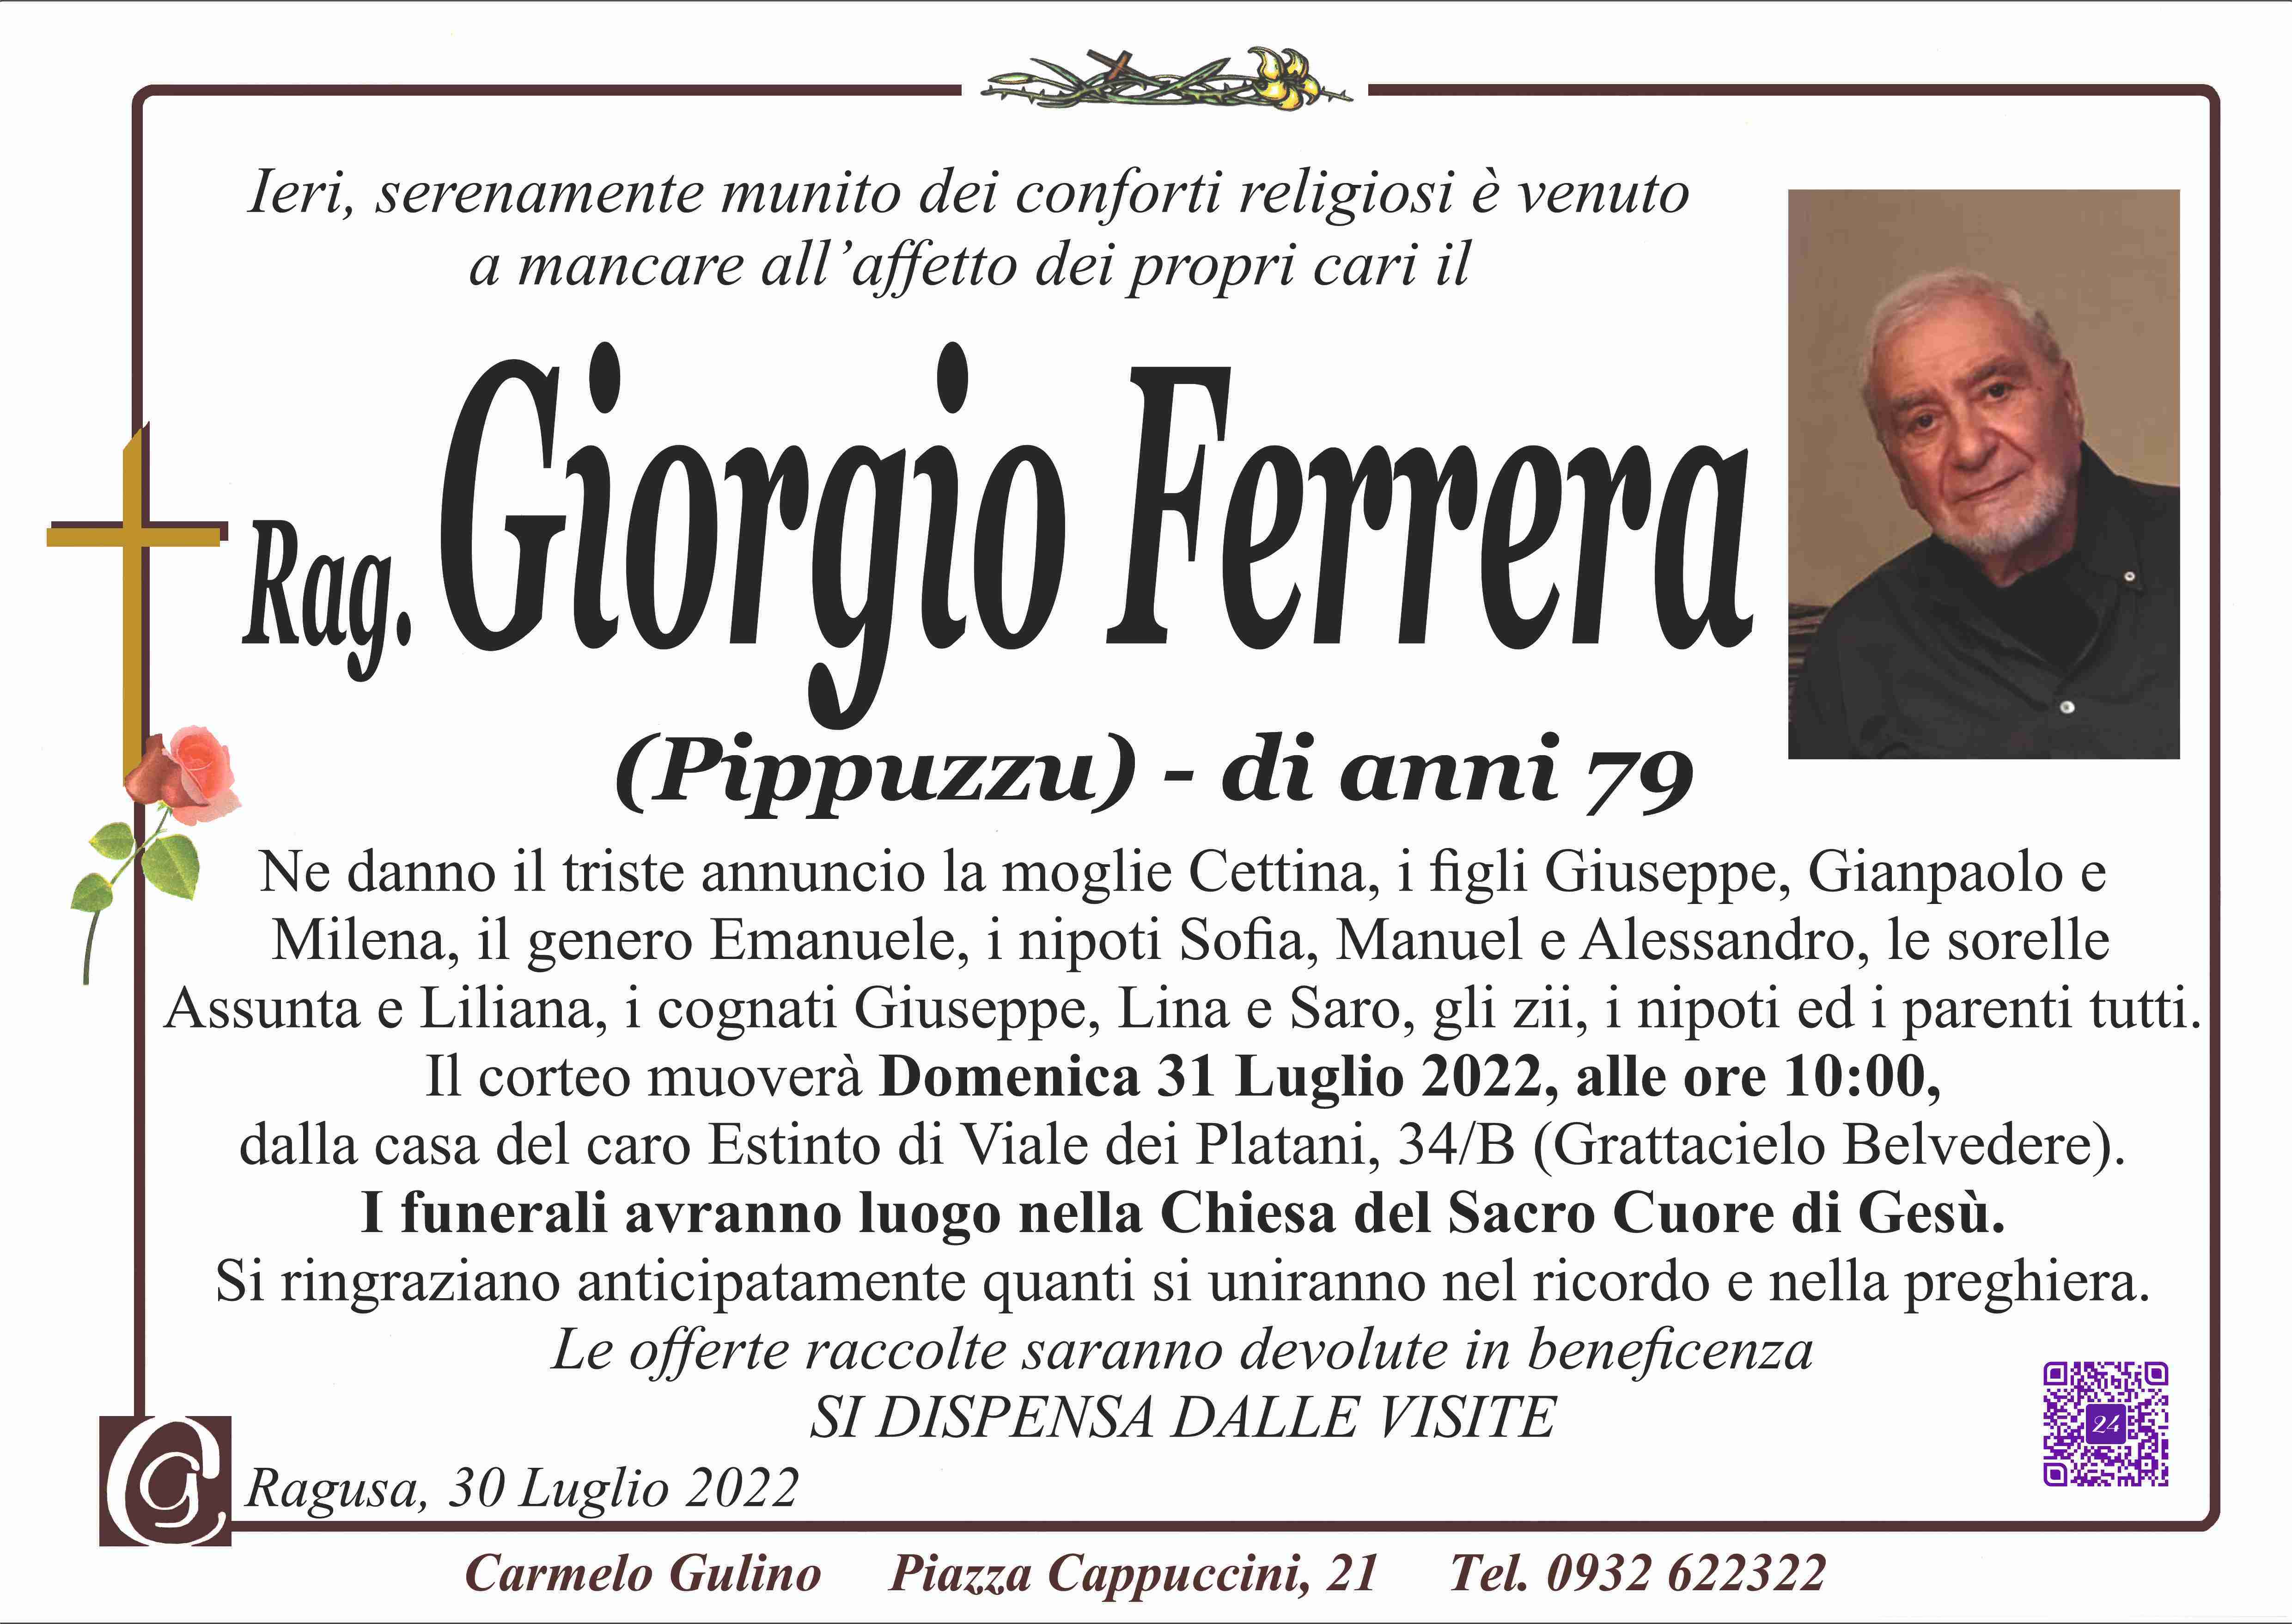 Giorgio Ferrera